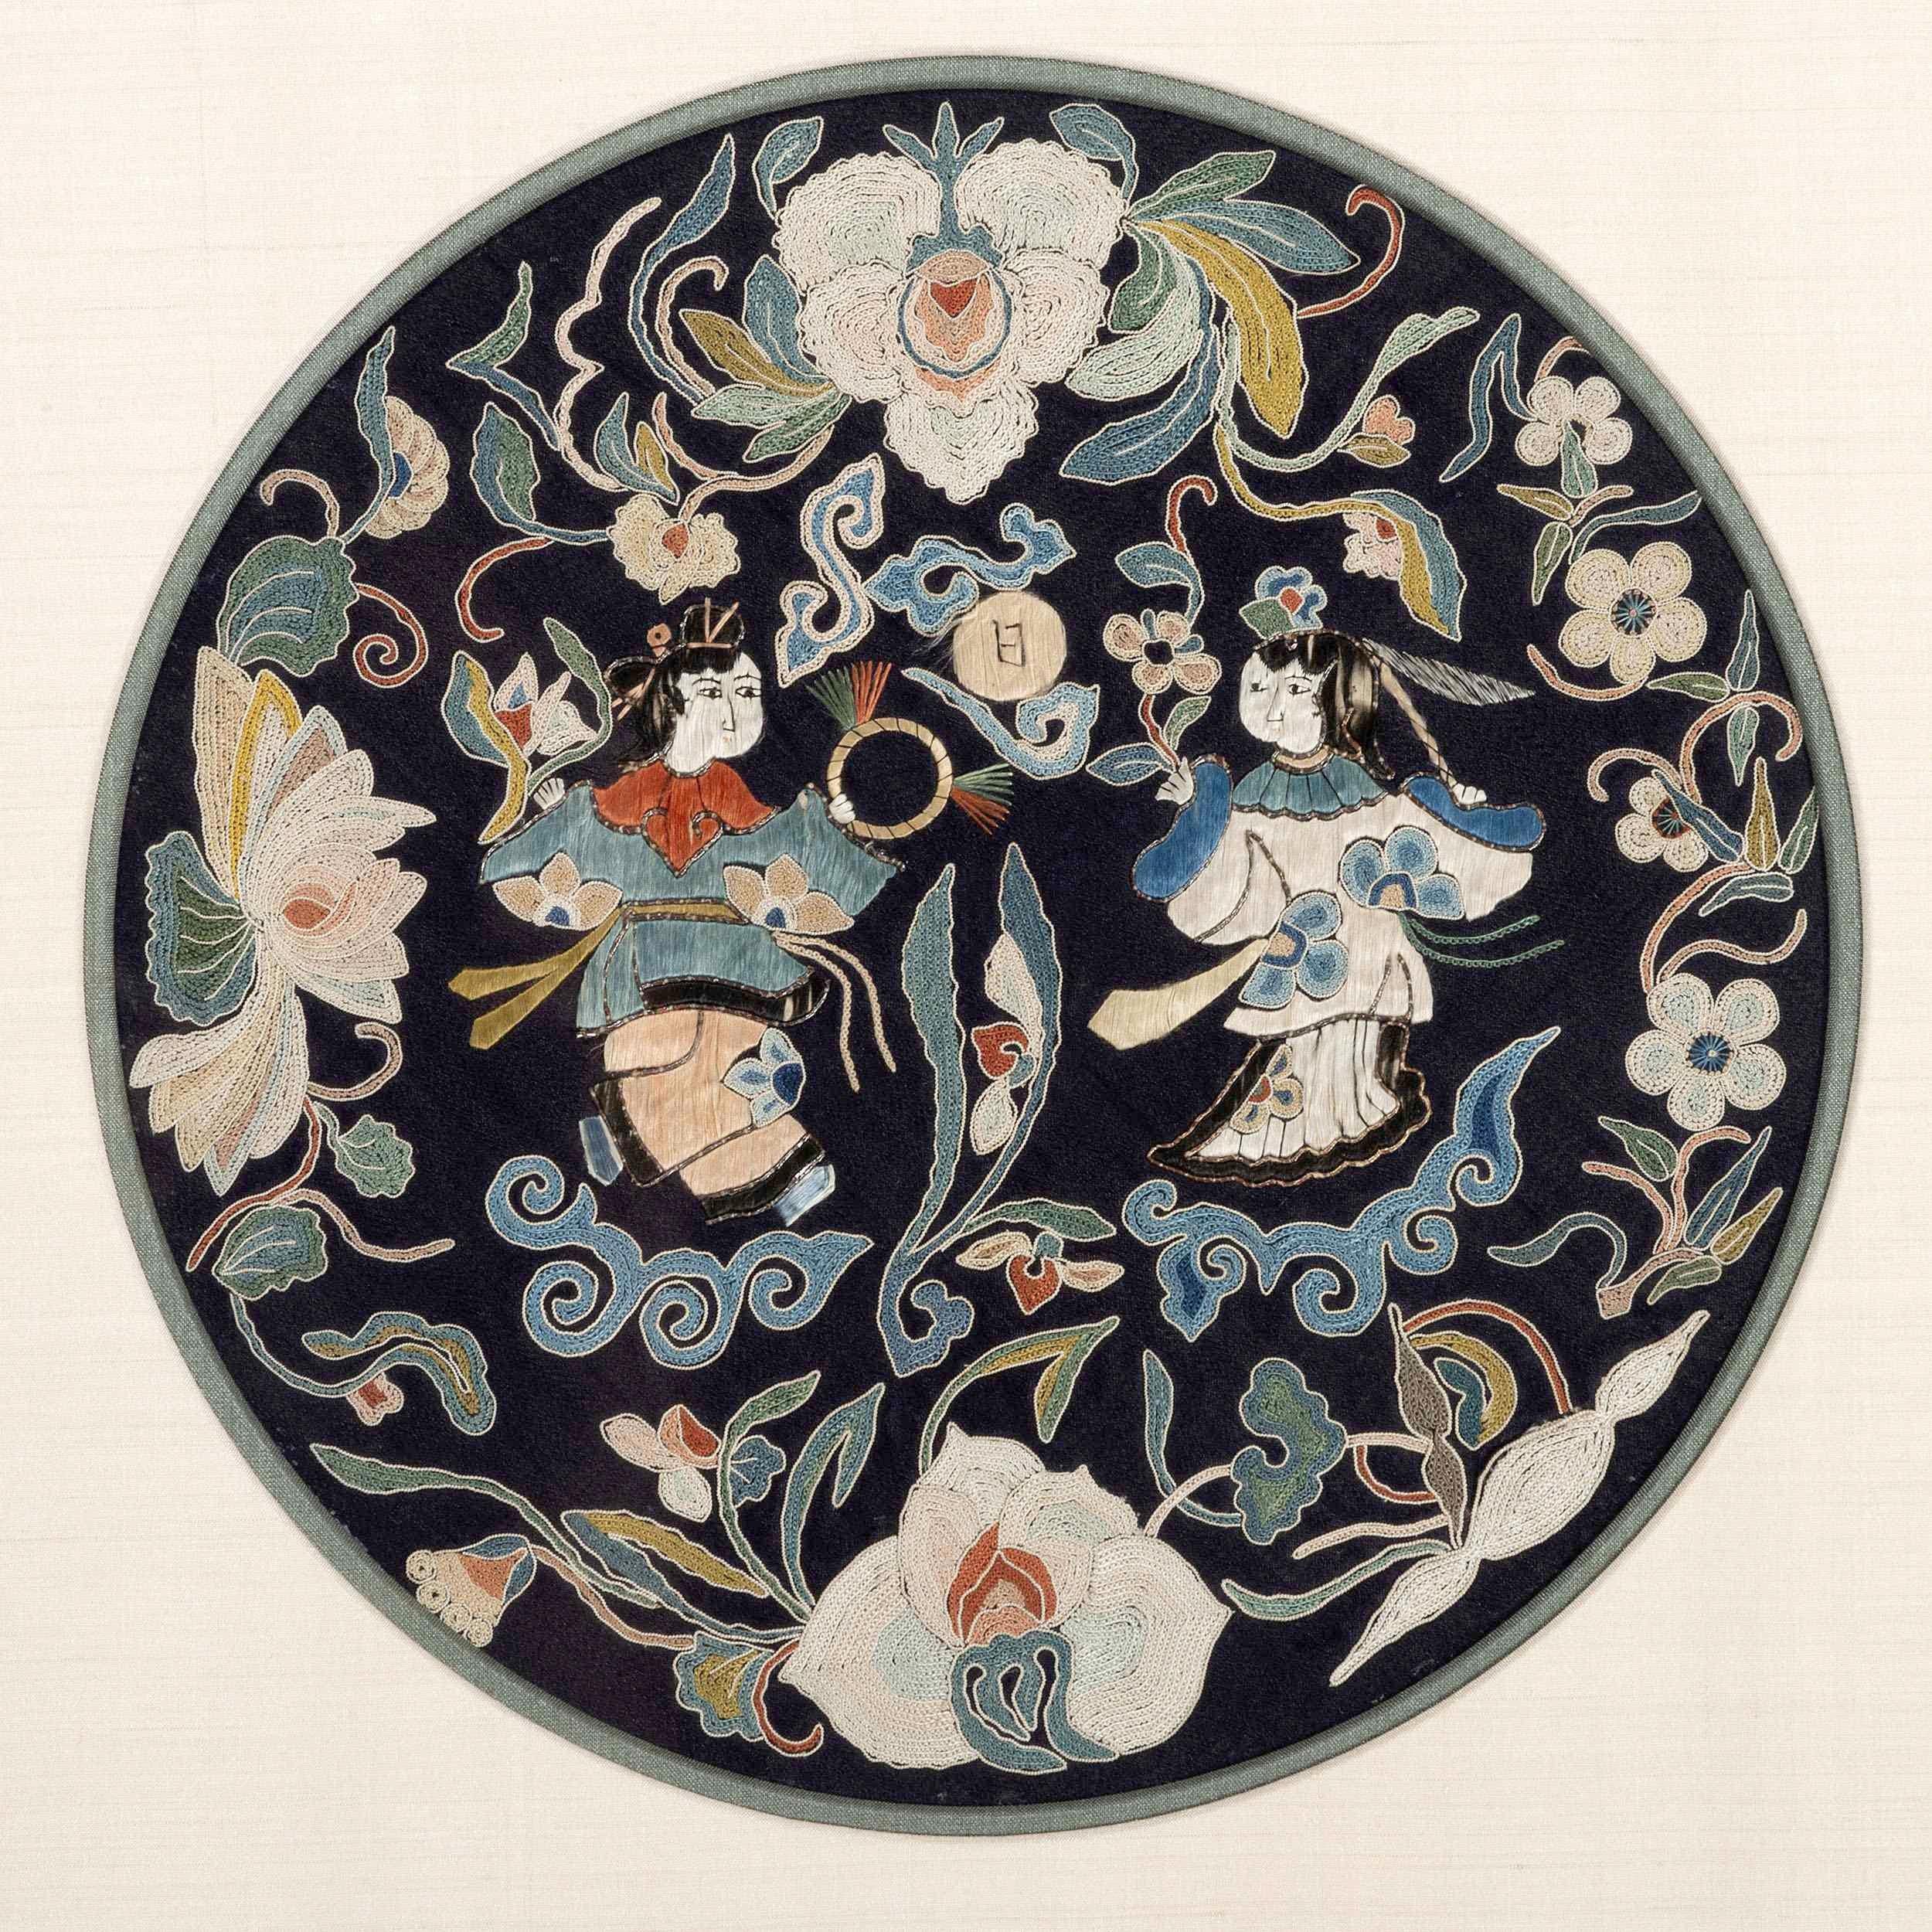 Eine antike chinesische Stickerei, die in einem Rahmen in Museumsqualität präsentiert wird und ursprünglich von der Galerie Du Monde in Hongkong erworben wurde. Ursprünglich handelte es sich bei dem Textil um ein Rondell, das wahrscheinlich von der